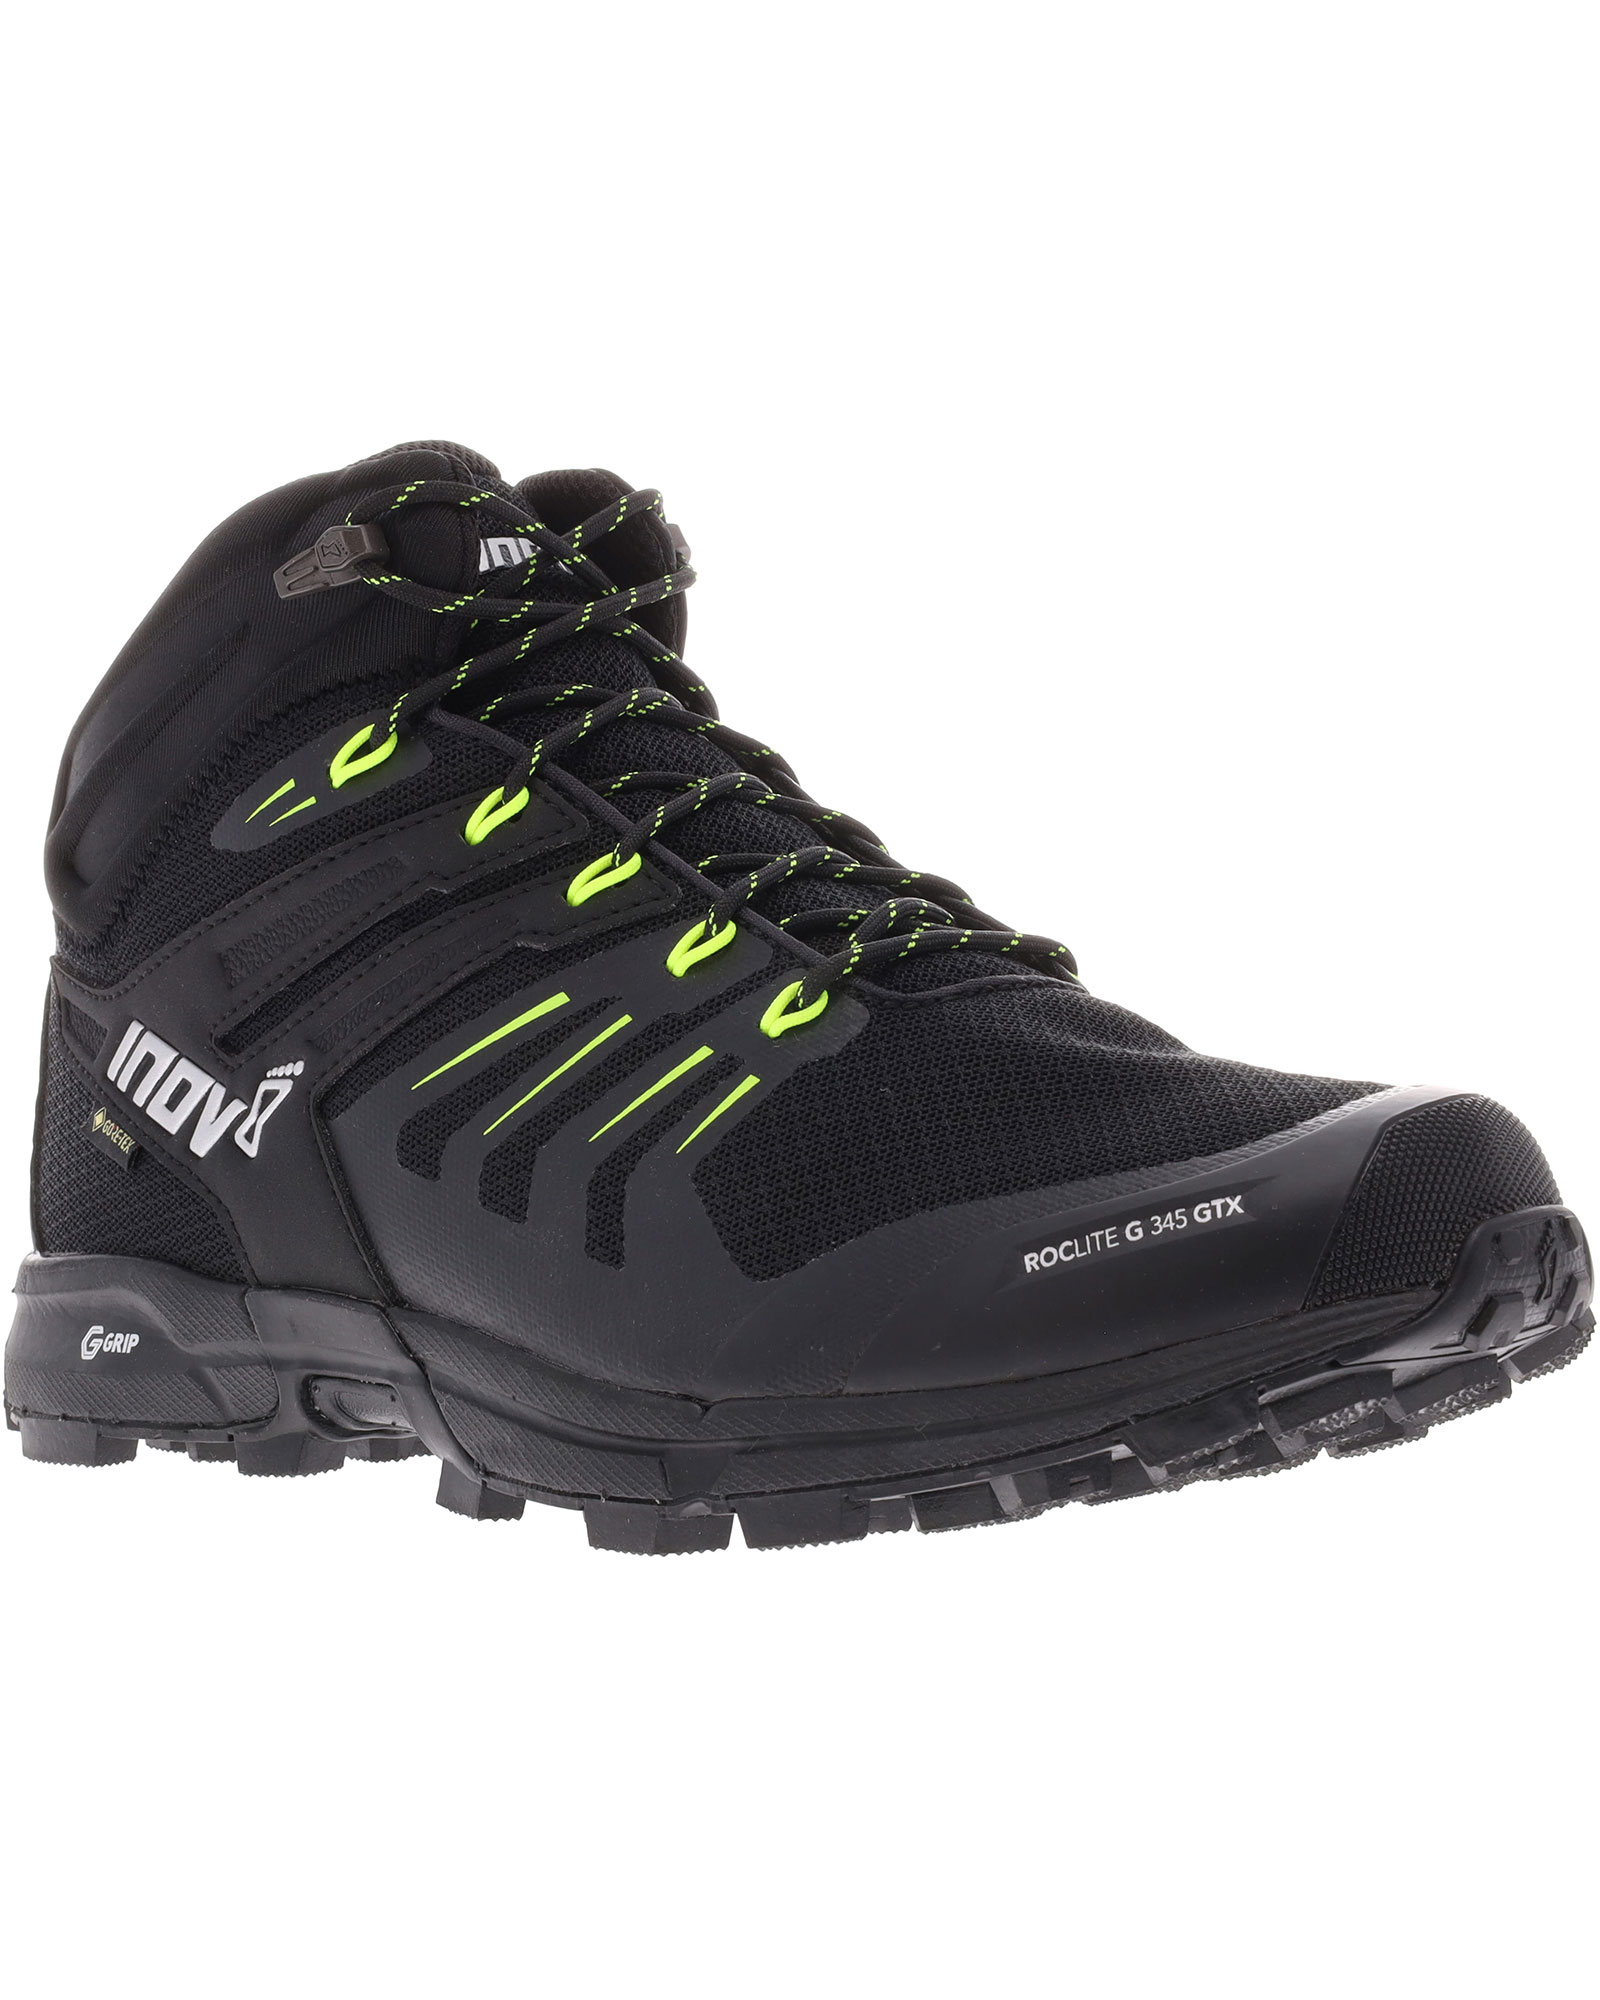 Inov 8 Roclite G 345 V2 GORE TEX Men’s Boots - Black/Lime UK 9